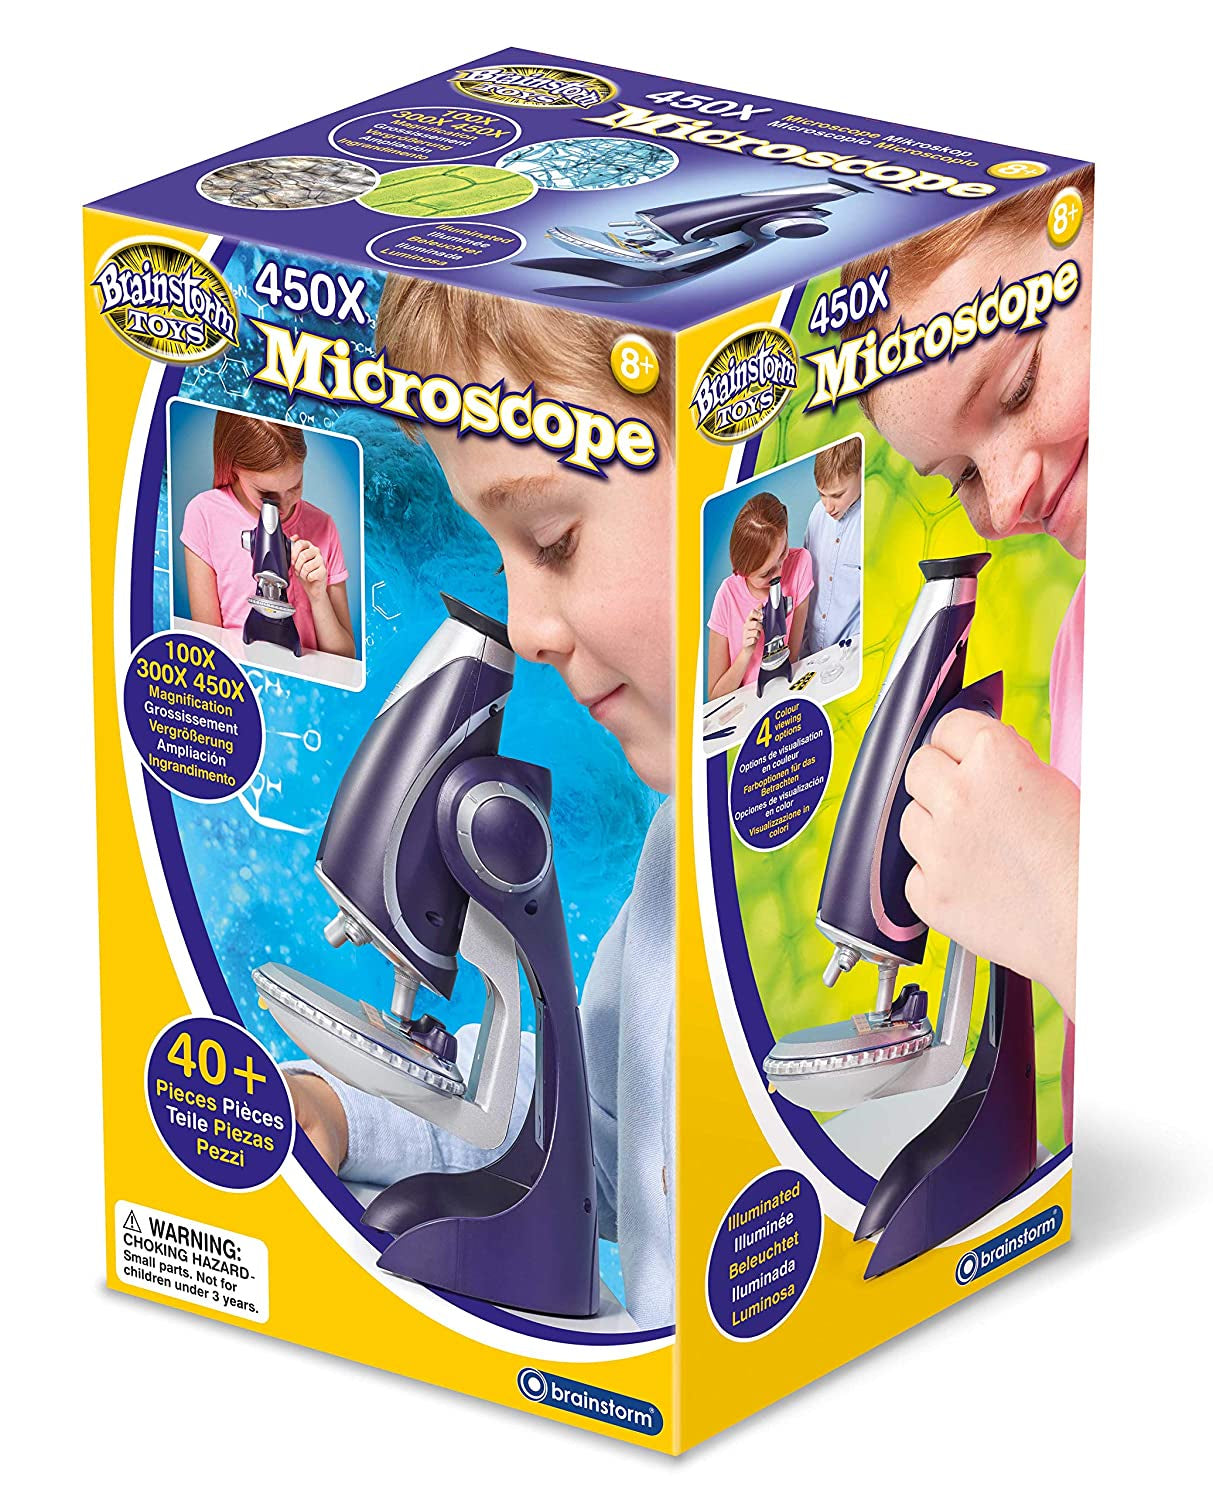 Brainstorm 450X MicroscopeBrainstorm 450X Microscope